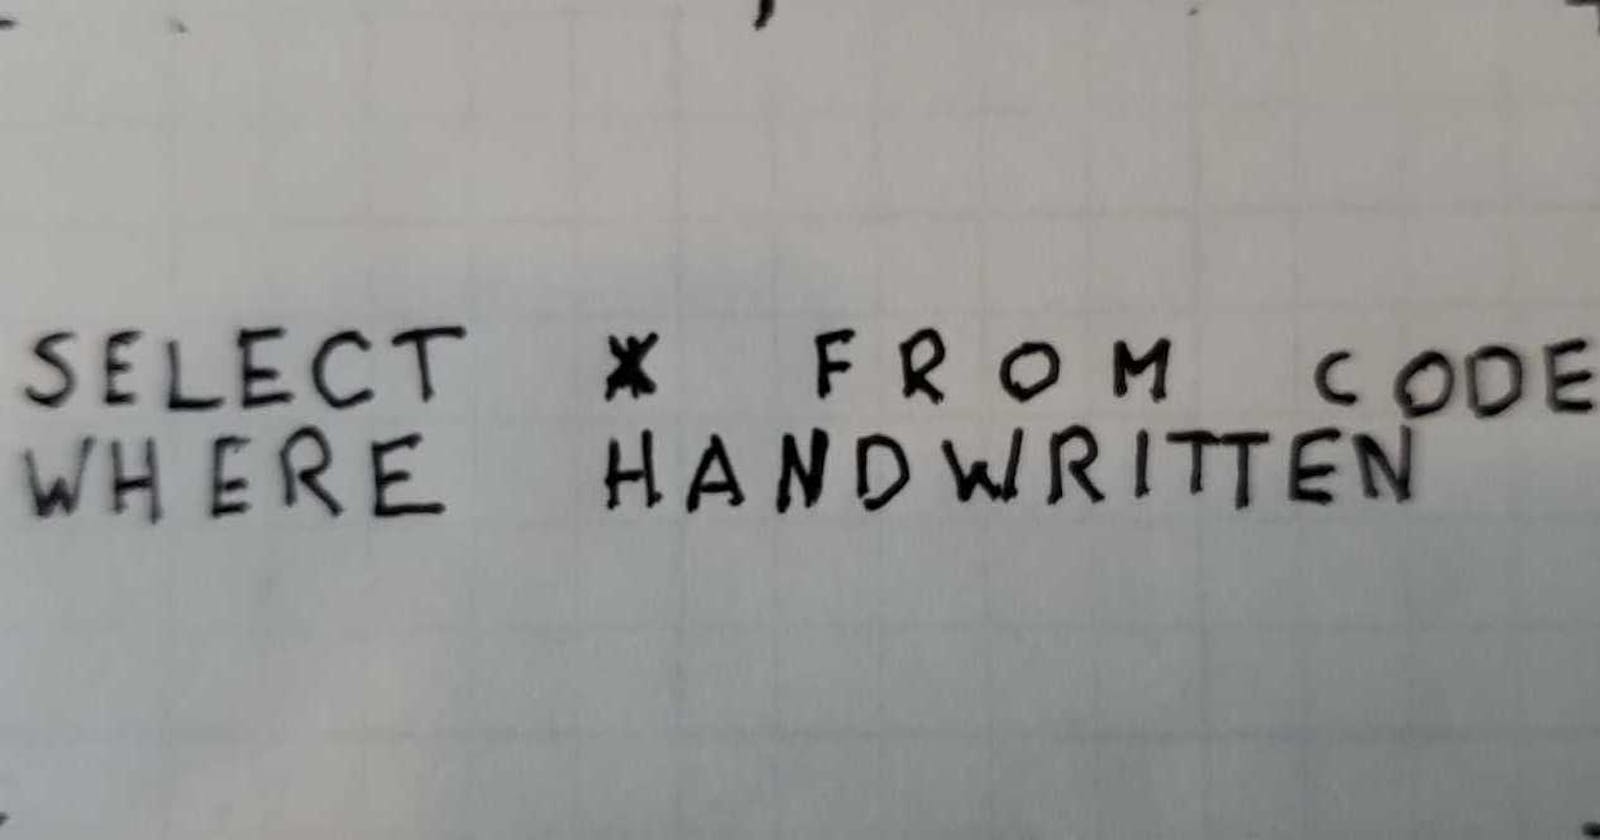 Handwritten Code